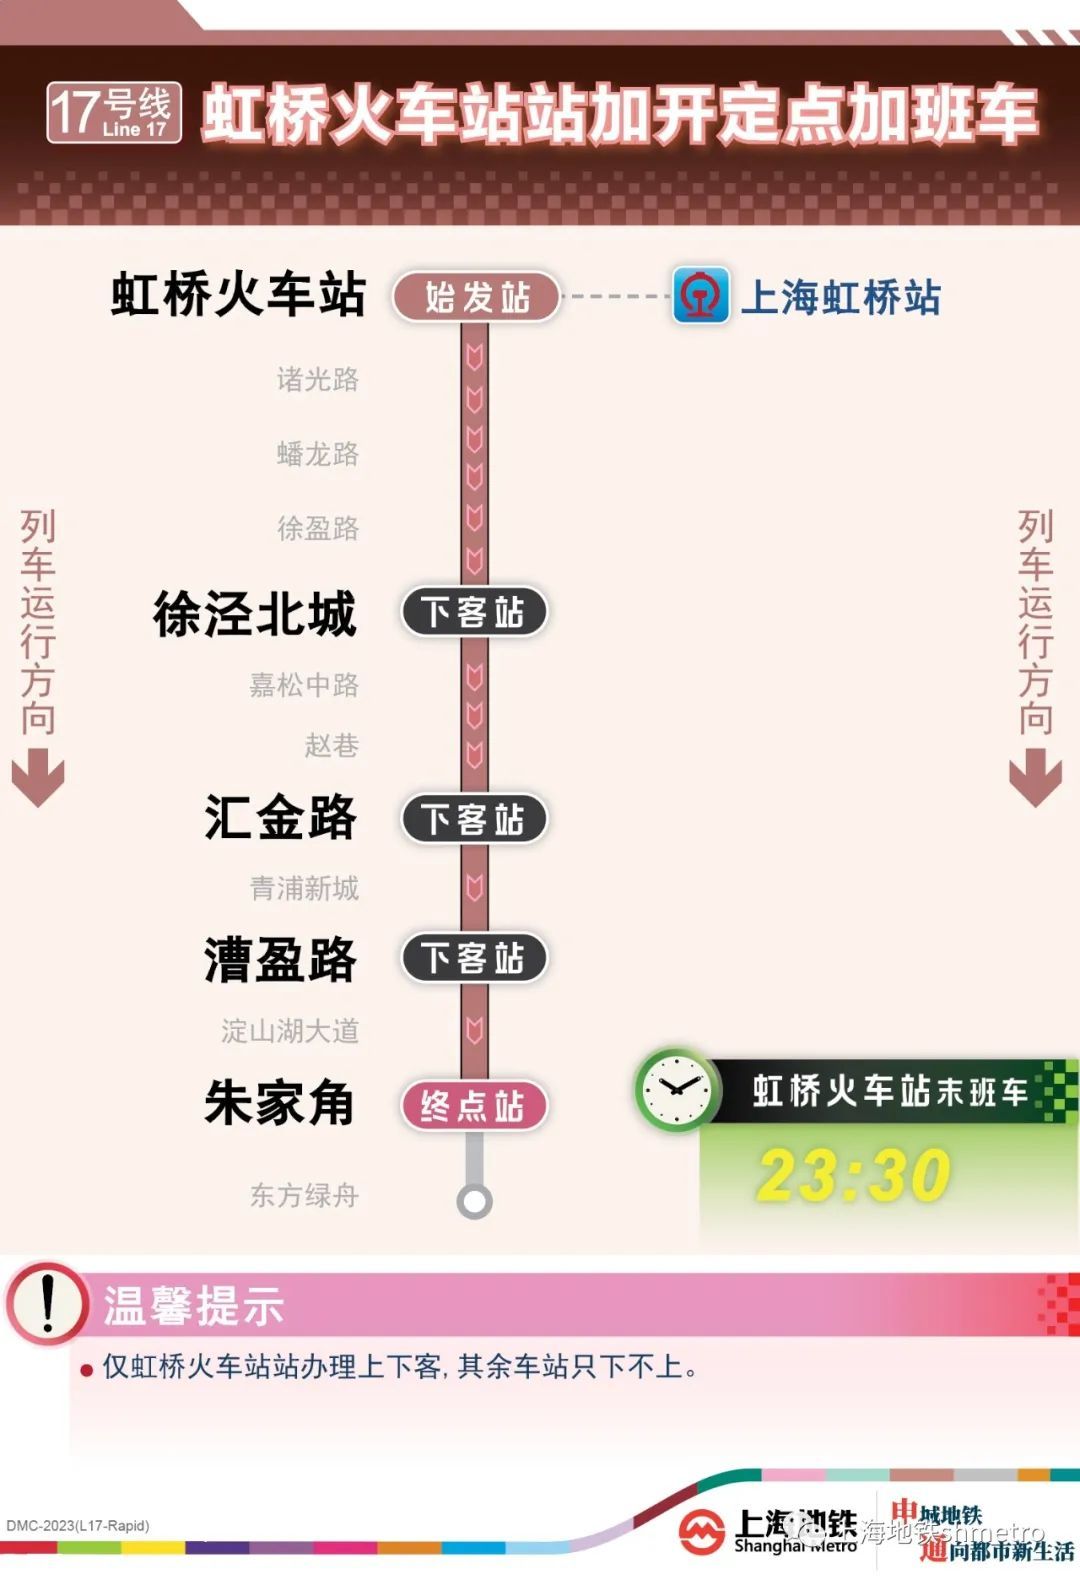 上海地铁线17号路图图片